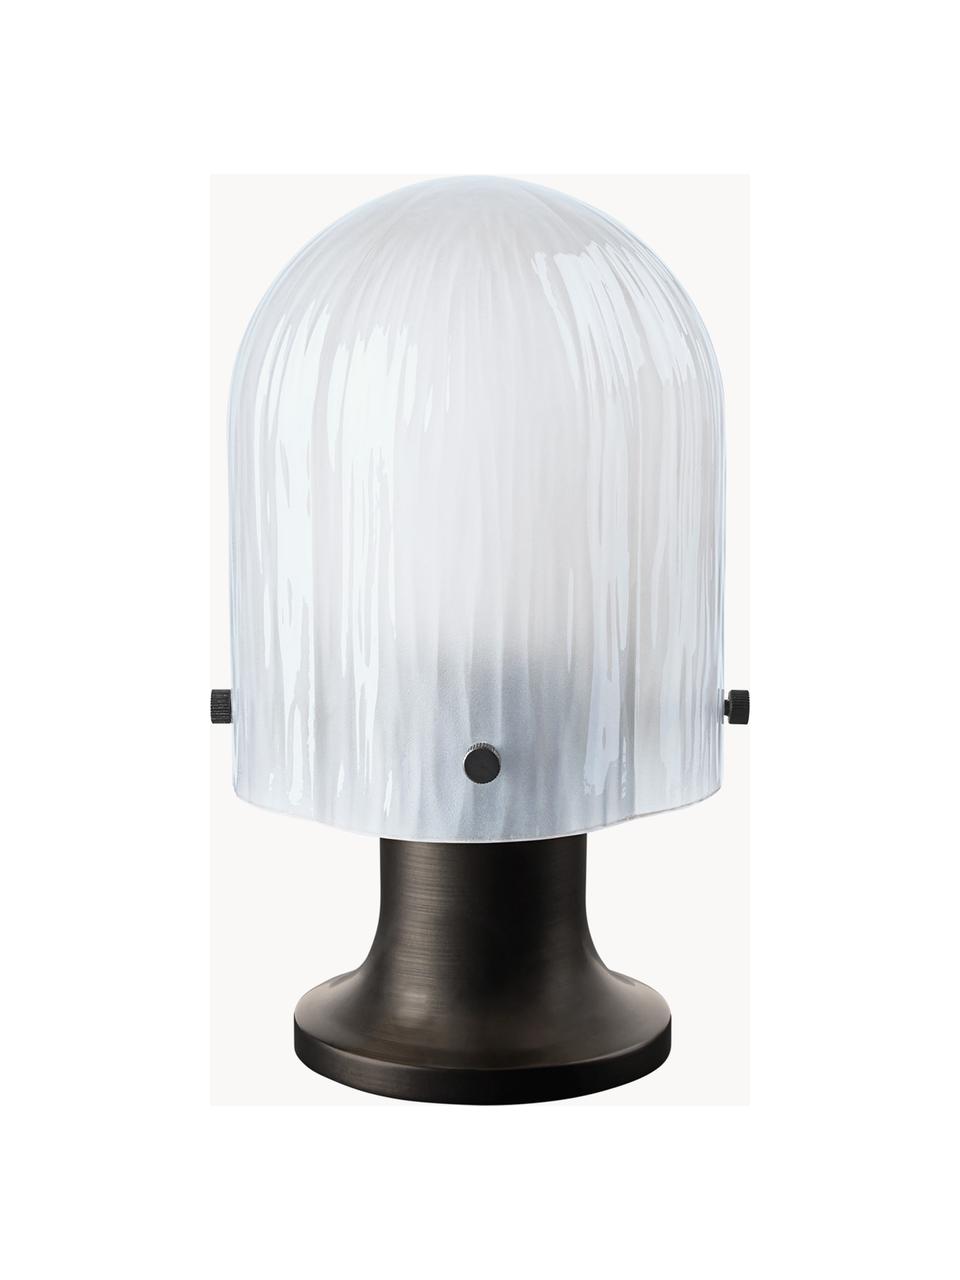 Mobile Outdoor Tischlampe Seine mit USB-Anschluss, dimmbar, Lampenschirm: Glas, mundgeblasen, Lampenfuß: Messing, brüniert, Weiß, Dunkelbraun, Ø 14 x H 25 cm